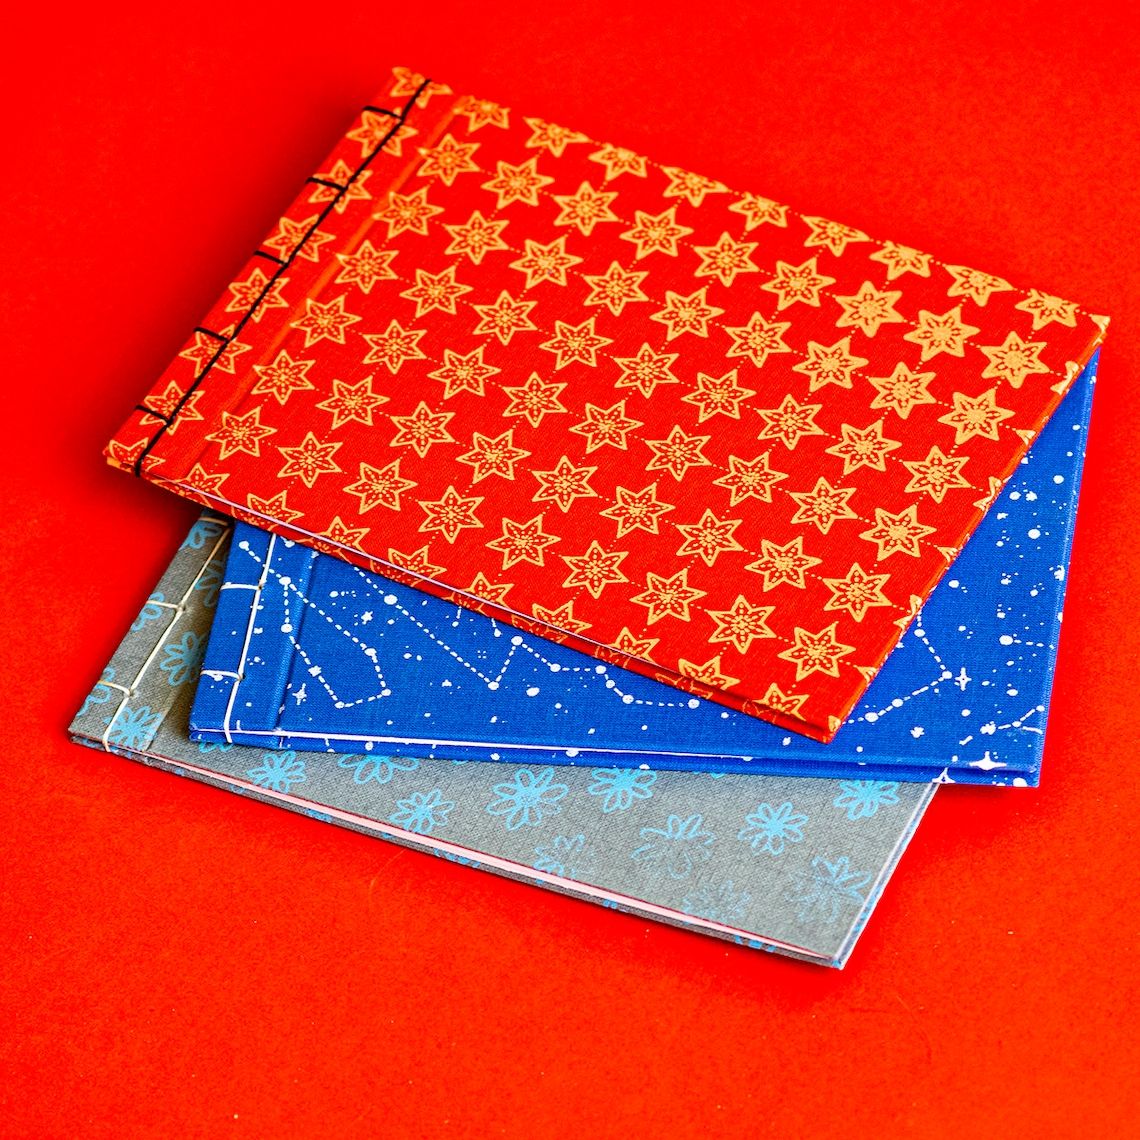 Japanese style bound notebooks